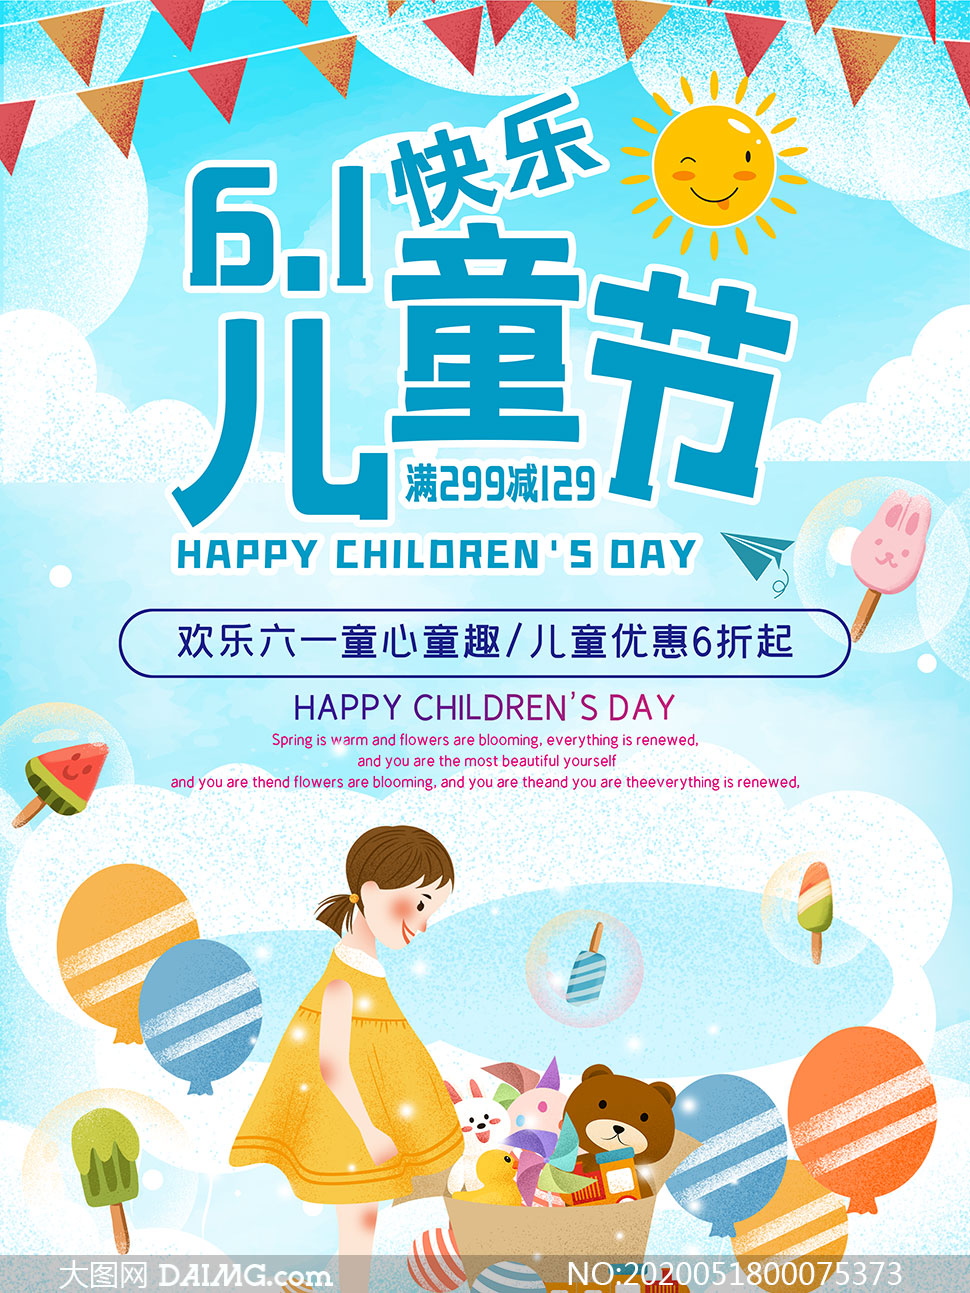 61儿童节快乐活动海报设计psd模板